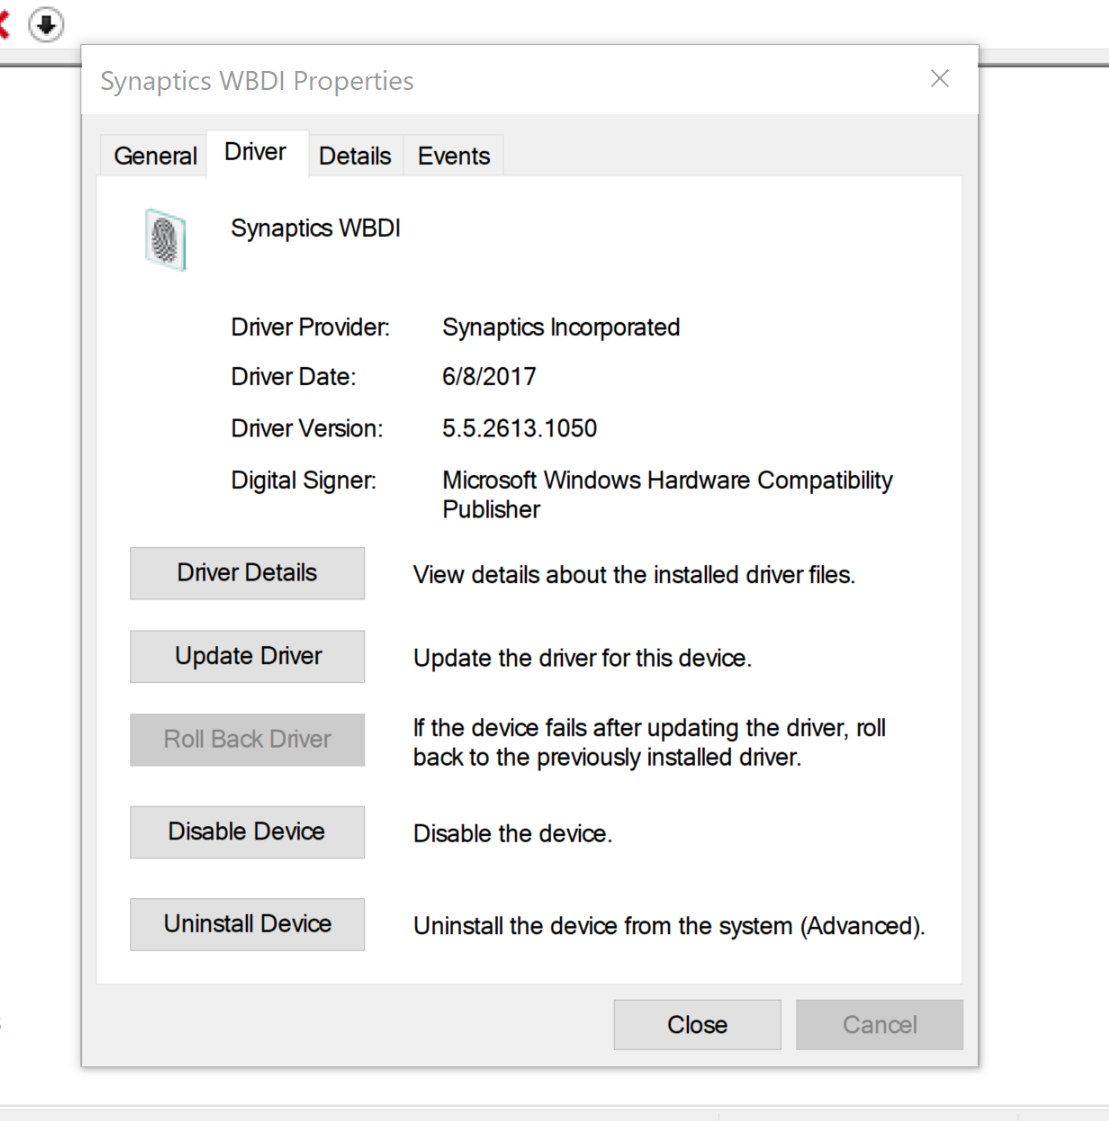 windows 10. Fingerprint not showing in settings.  Lenovo Flex 5 1570 029cd9c8-7bdf-416c-bc9a-ce3c70222c51?upload=true.png